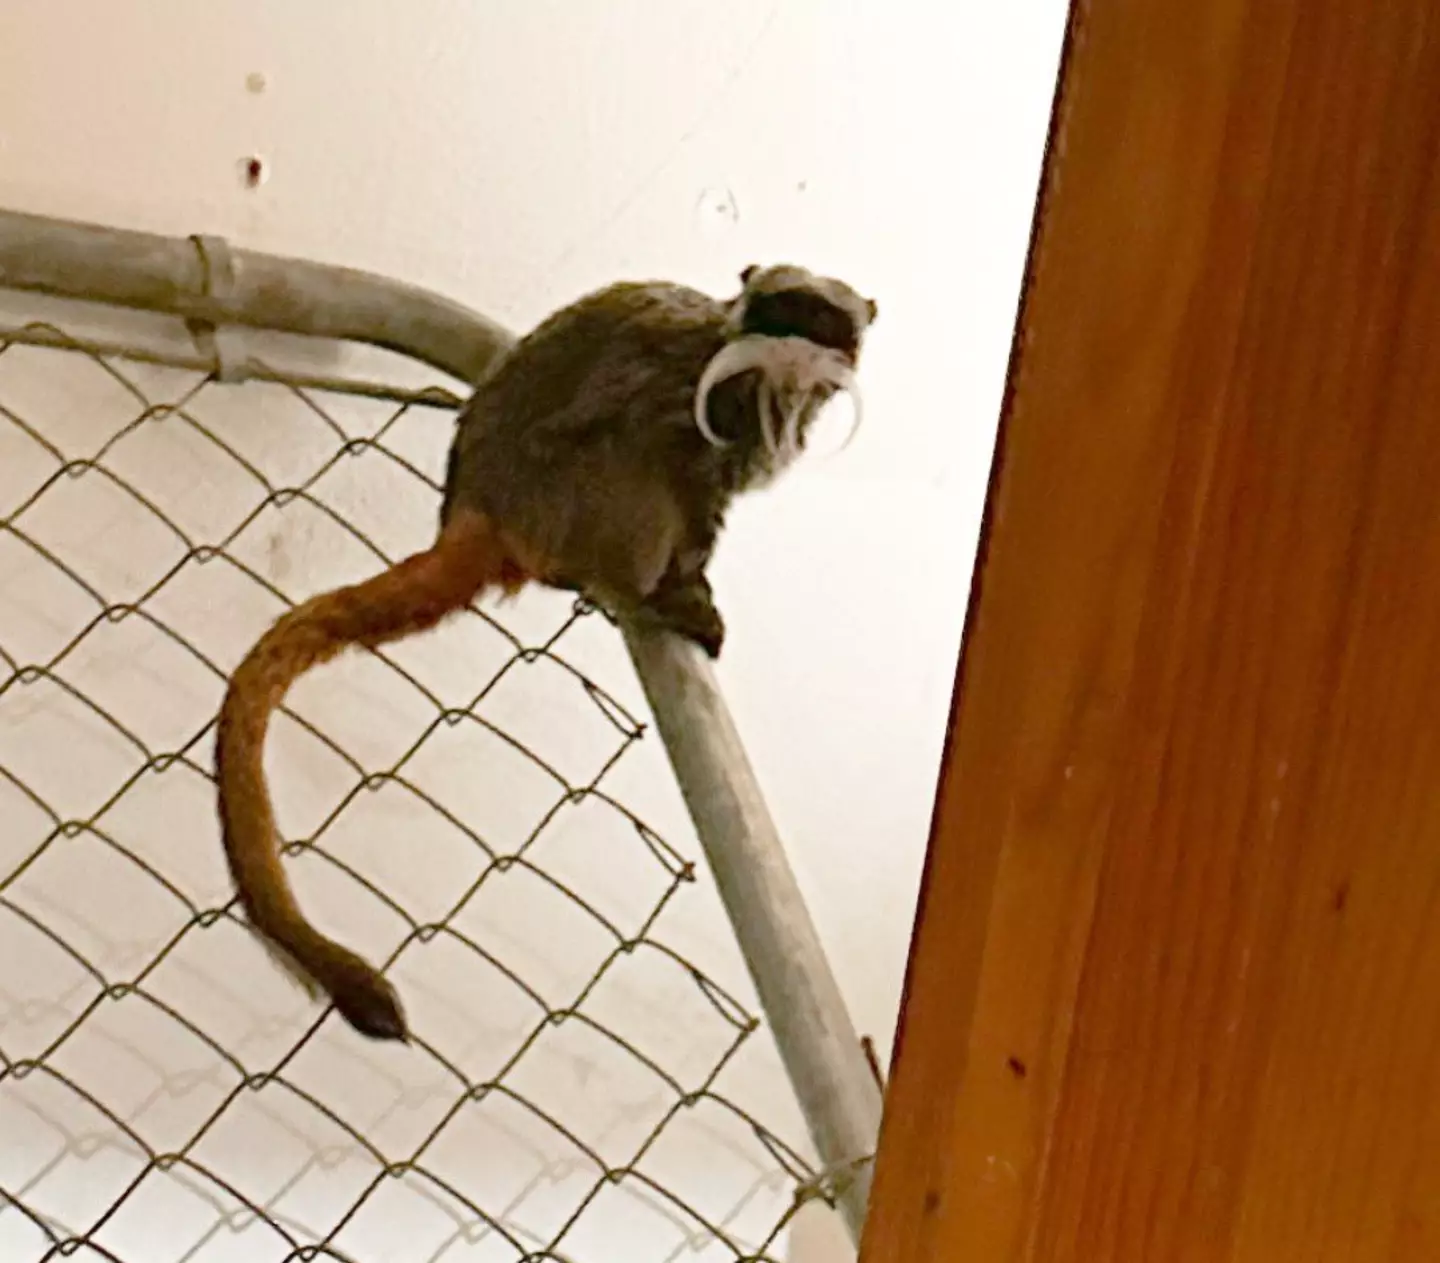 The monkeys were found in a closet.